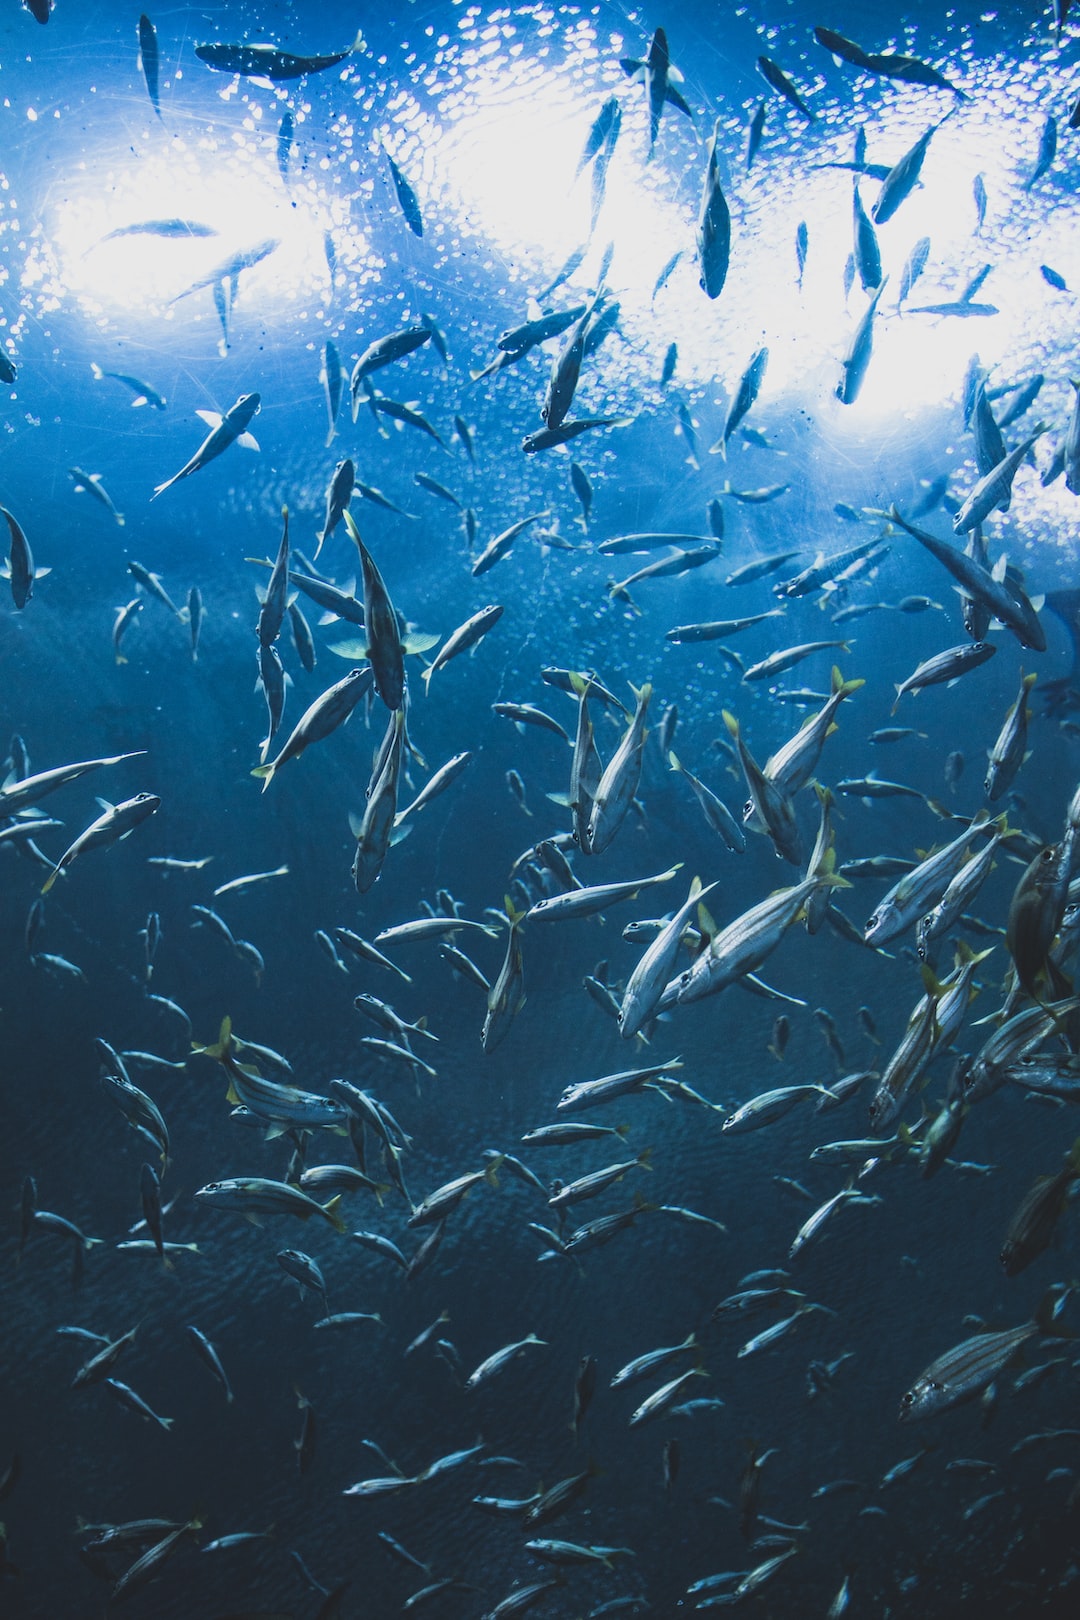 25 wichtige Fragen zu Wie Sehen Aquarium Schneckeneier Aus?